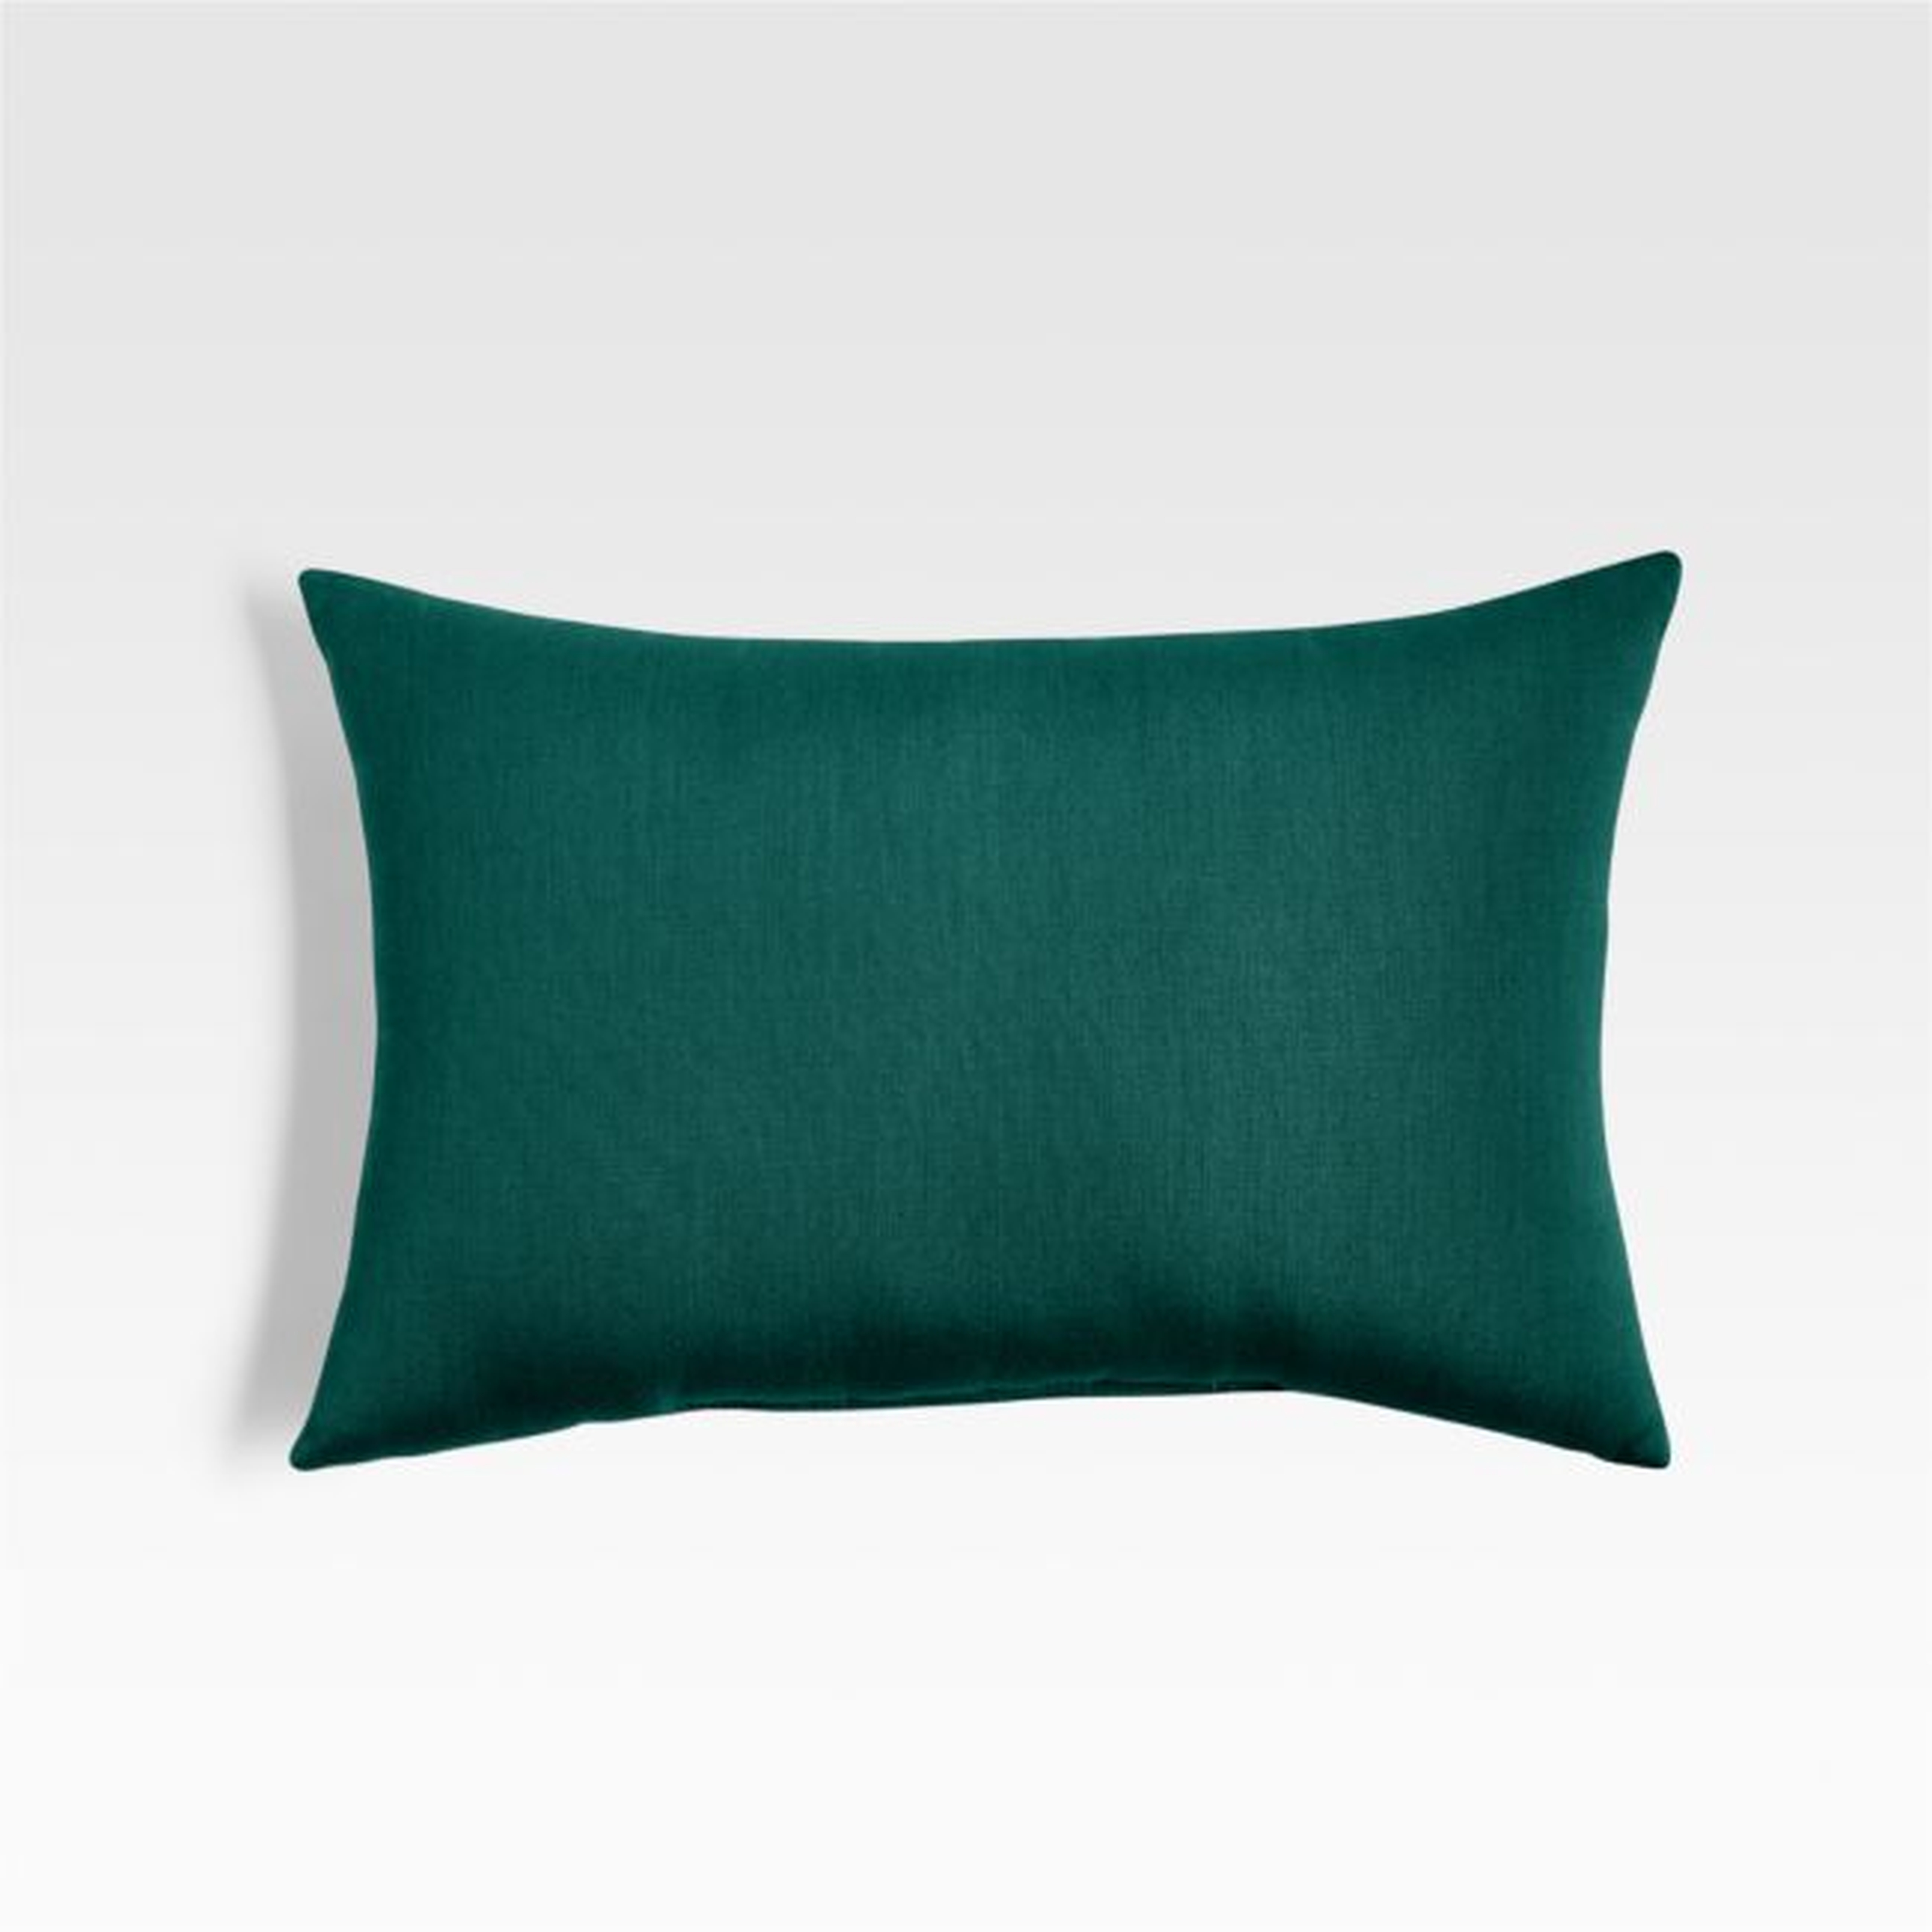 Sunbrella ® 20"x13" Forest Green Outdoor Lumbar Pillow - Crate and Barrel